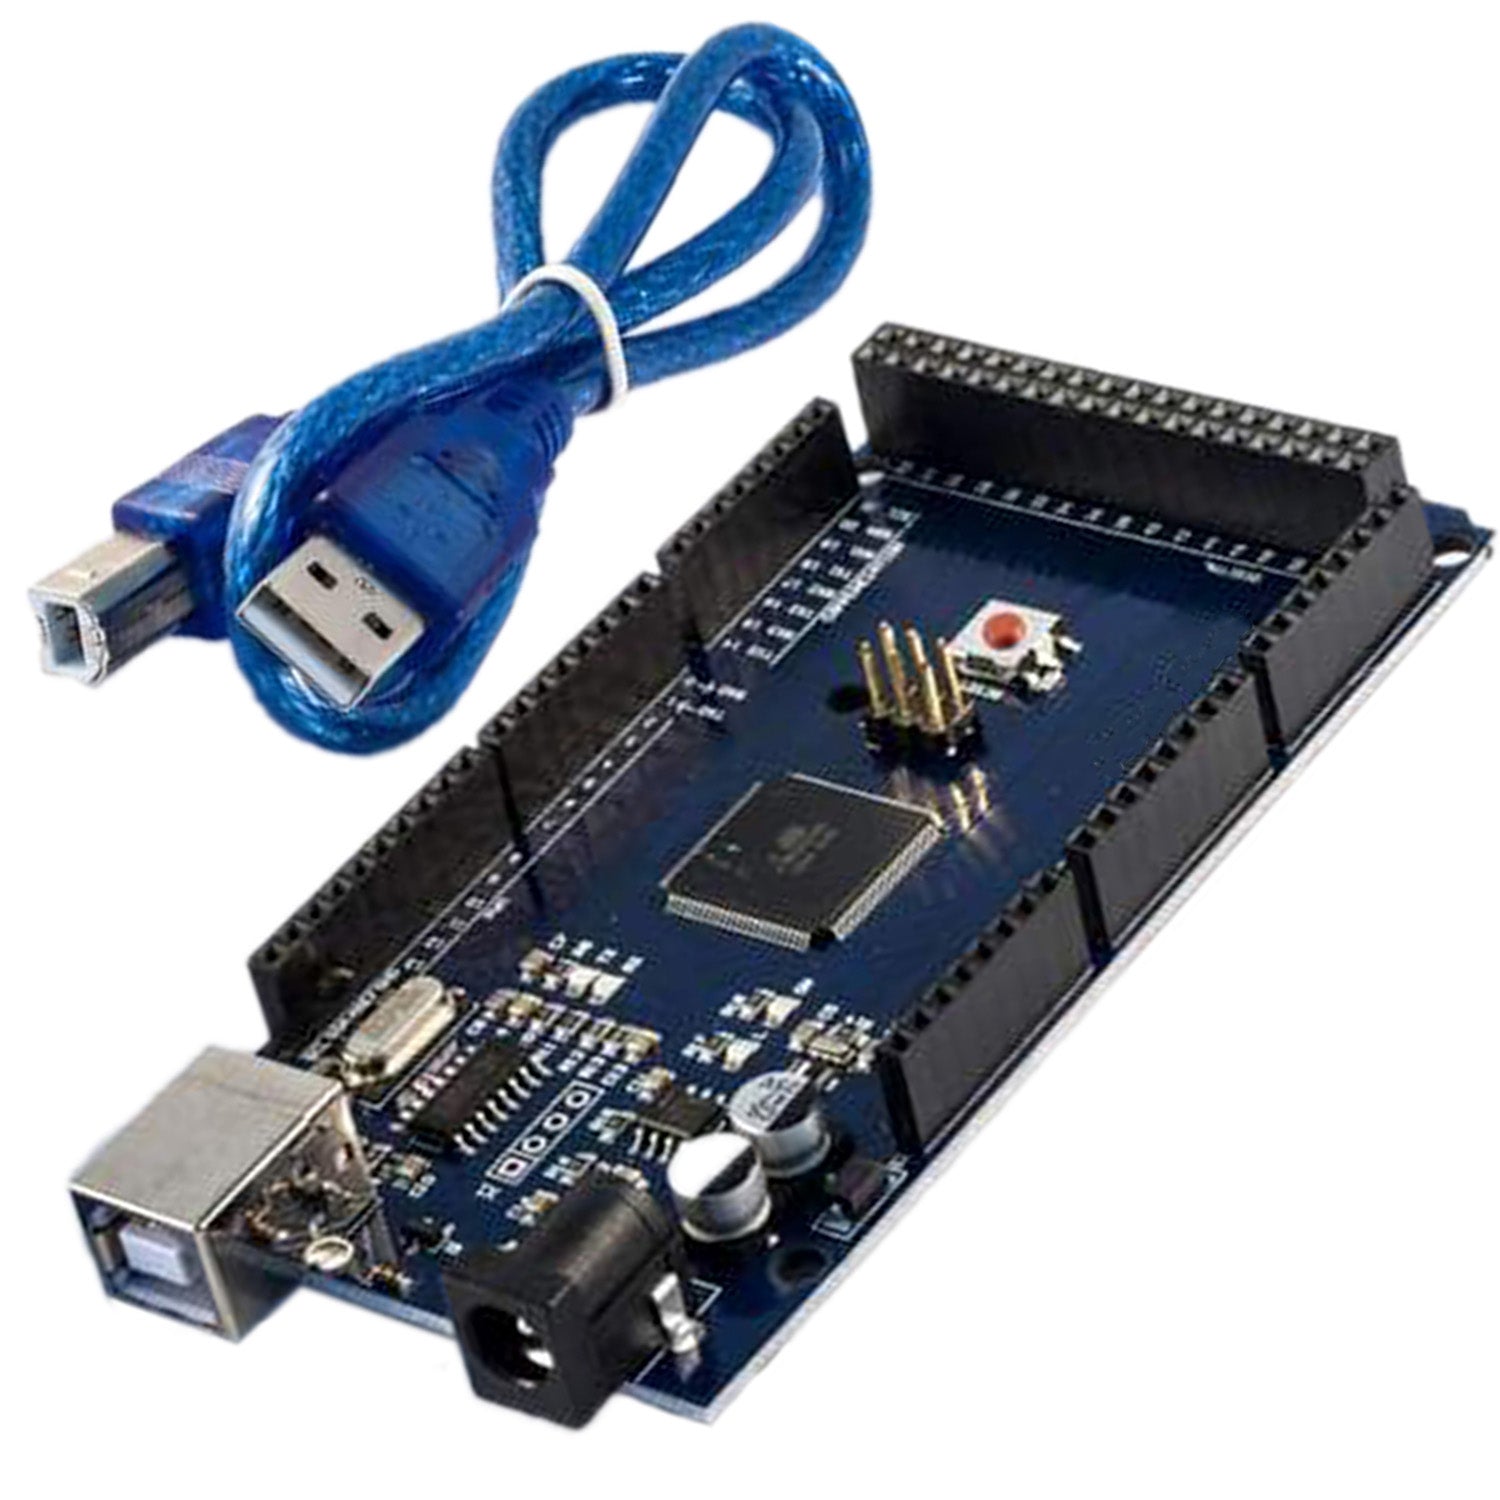 AZ-MEGA2560-Board mit ATmega2560 mit USB Kabel - AZ-Delivery